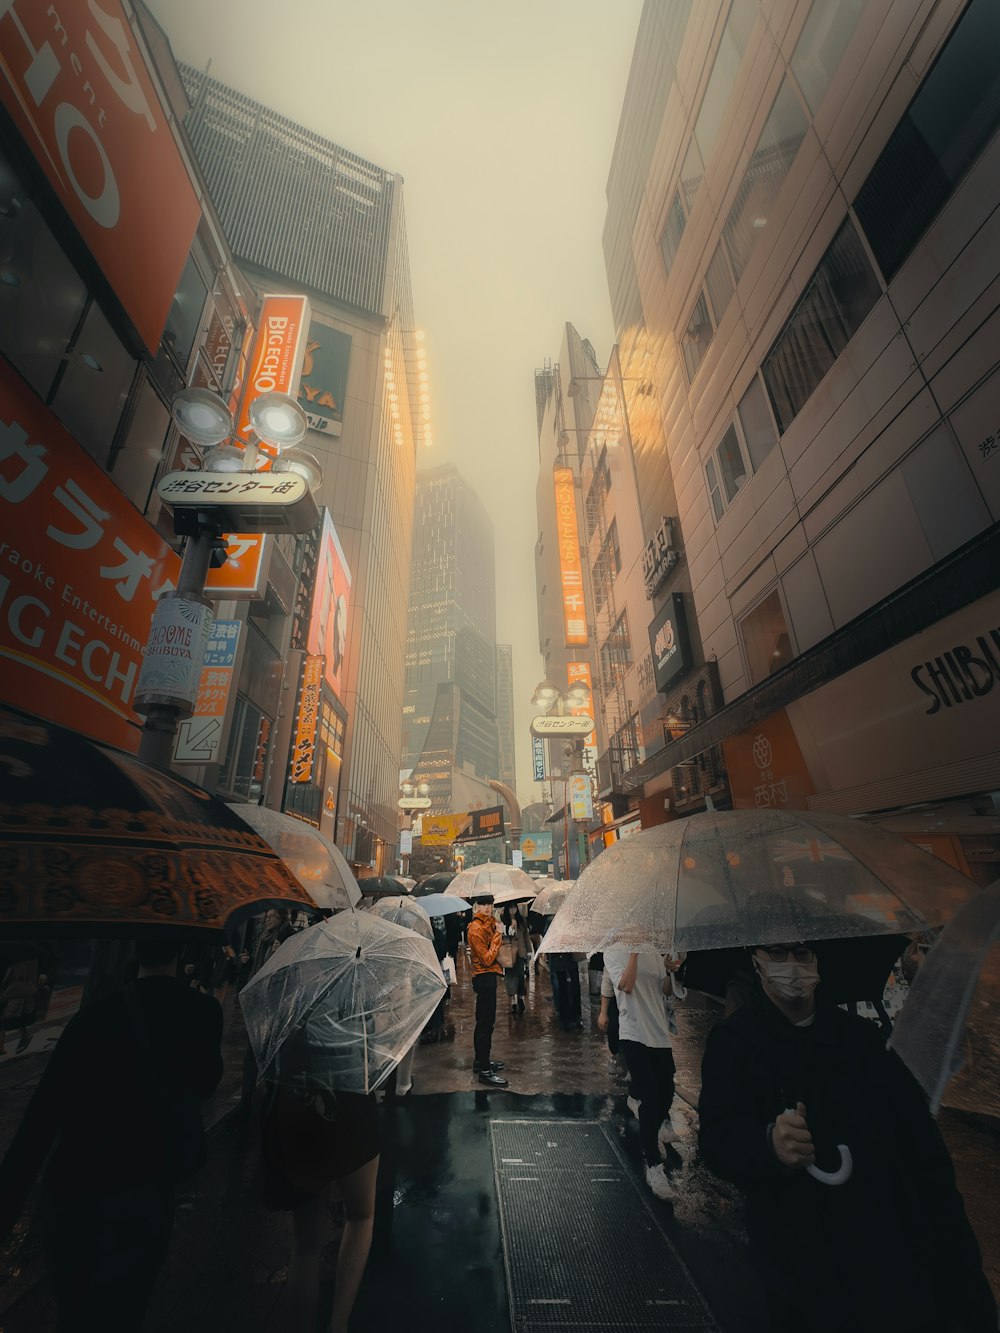 um grupo de pessoas caminhando por uma rua segurando guarda-chuvas